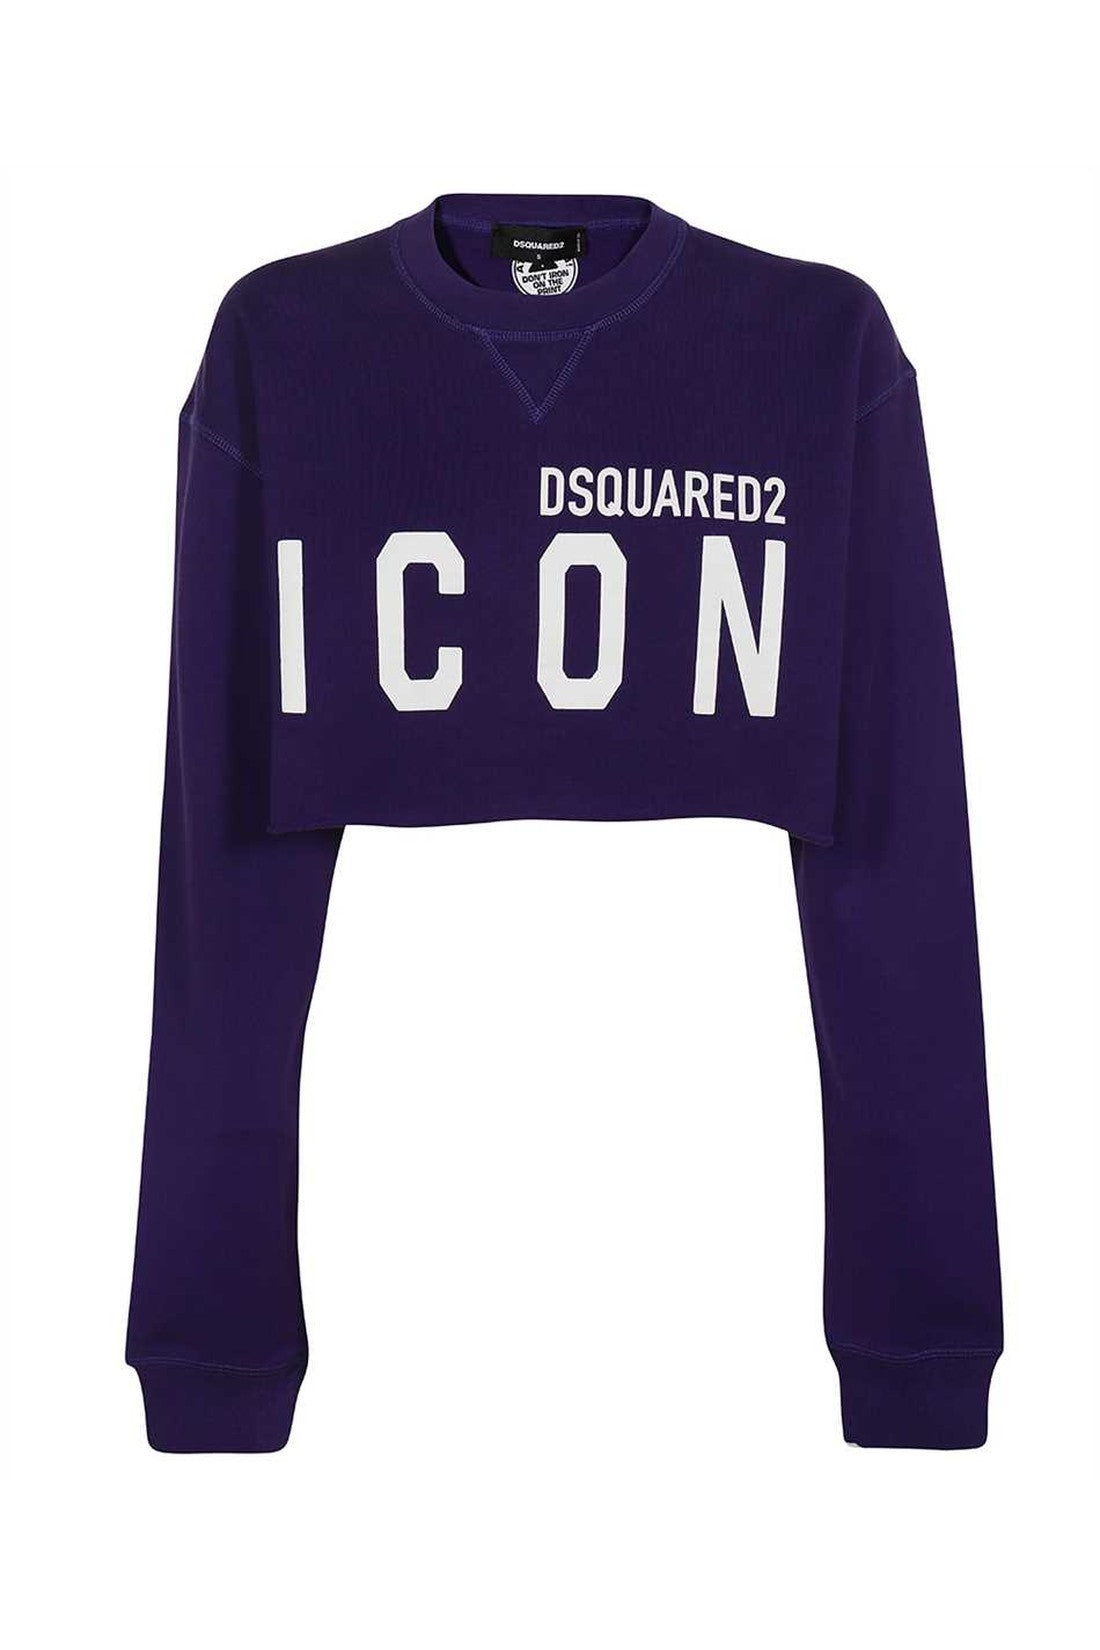 Dsquared2-OUTLET-SALE-Logo-detail-cotton-sweatshirt-Strick-M-ARCHIVE-COLLECTION_b1b5e728-a813-477c-92e5-a49b7021e698.jpg